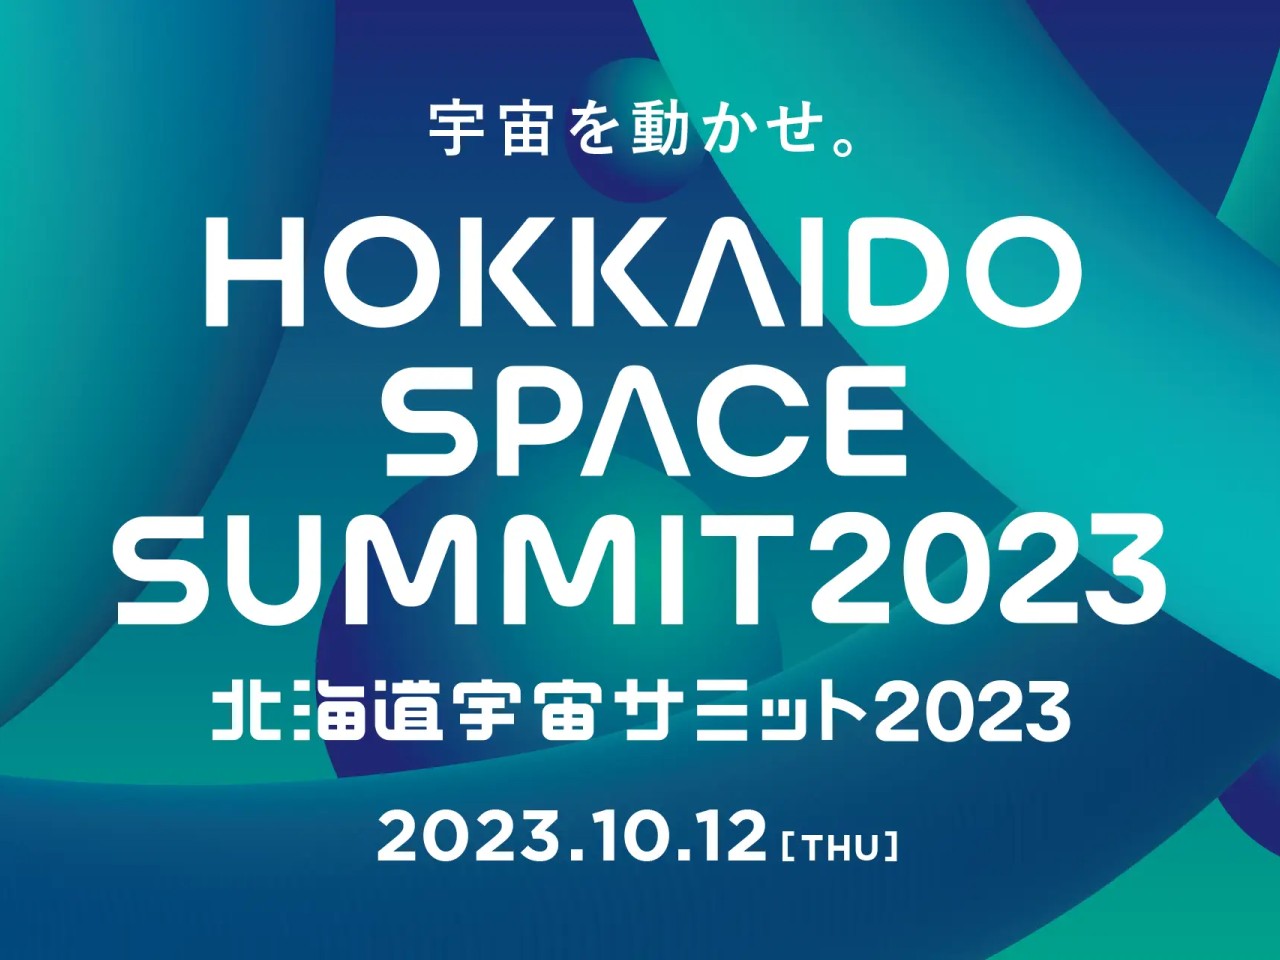 テーマは「宇宙を動かせ。」--「北海道宇宙サミット2023」参加申し込み開始